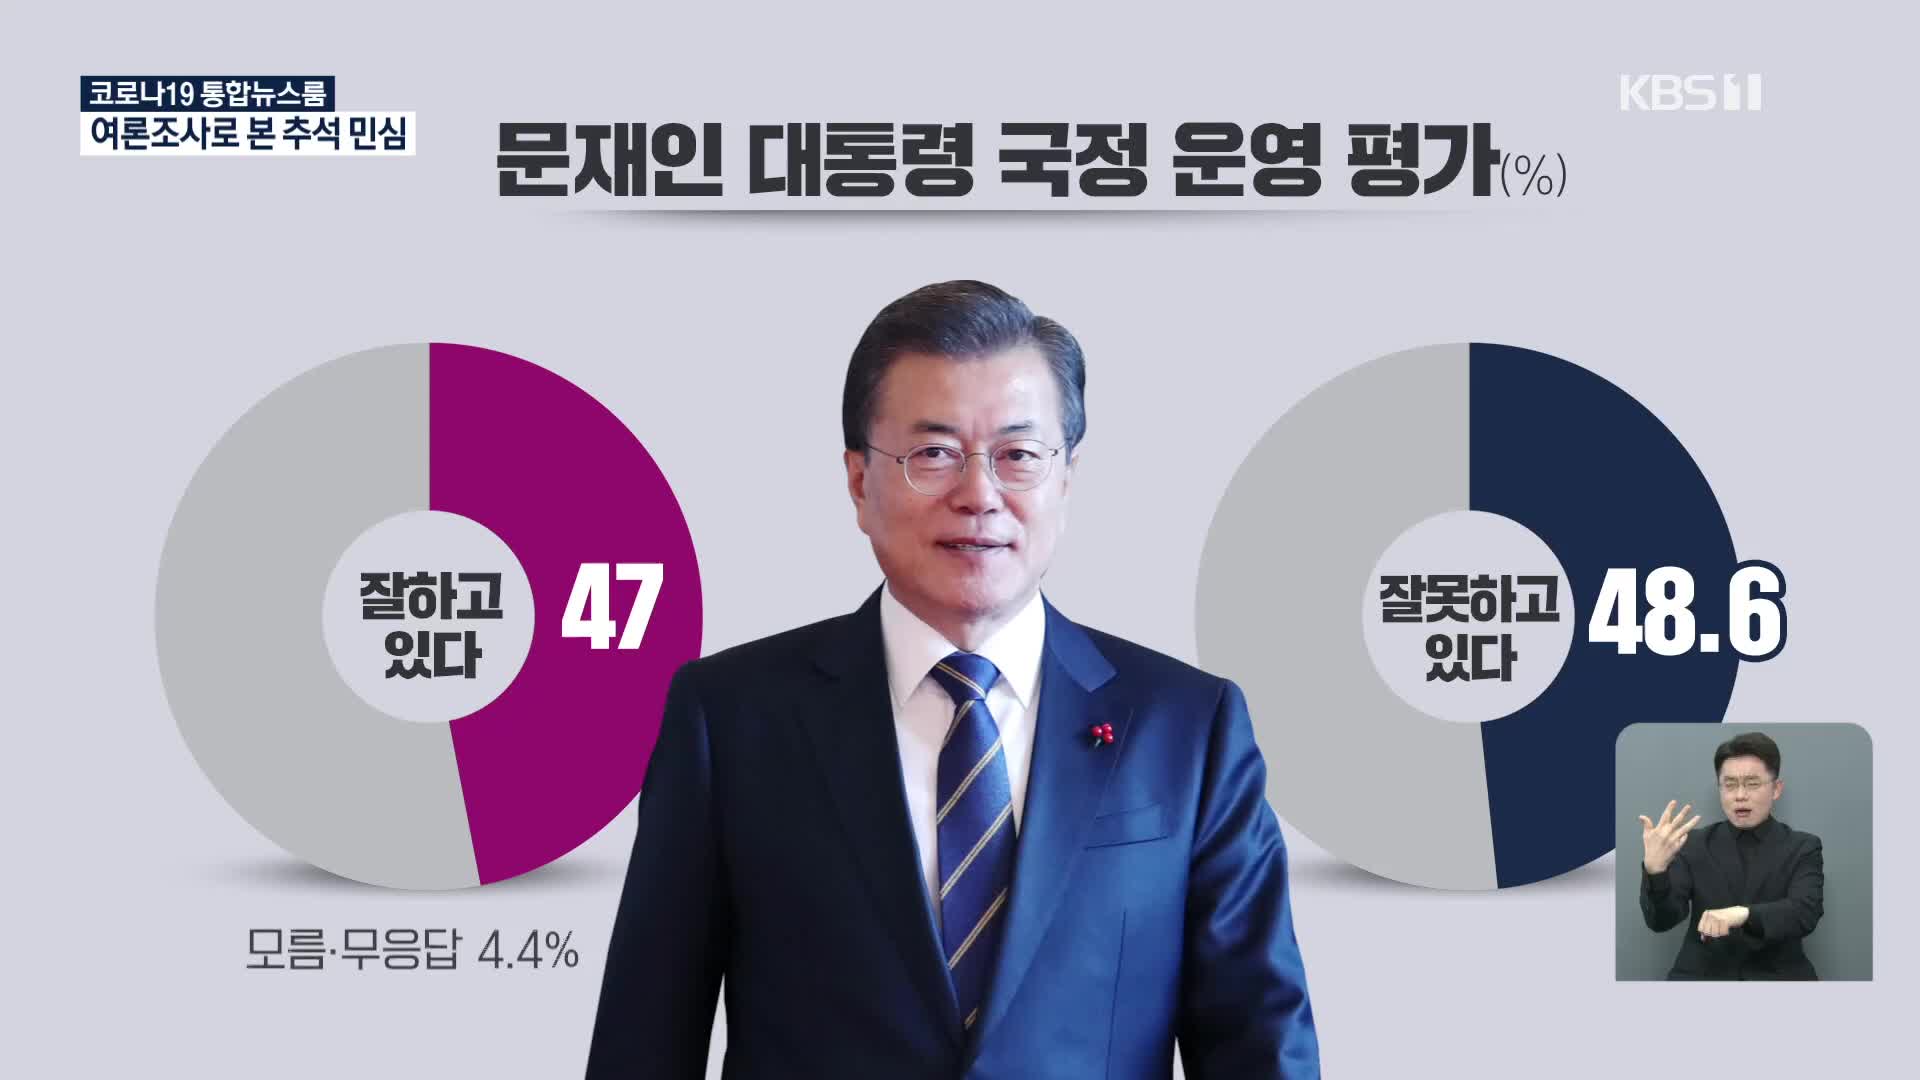 [추석민심]① ‘대통령 국정운영’ 잘한다 47%, 잘못한다 48.6%